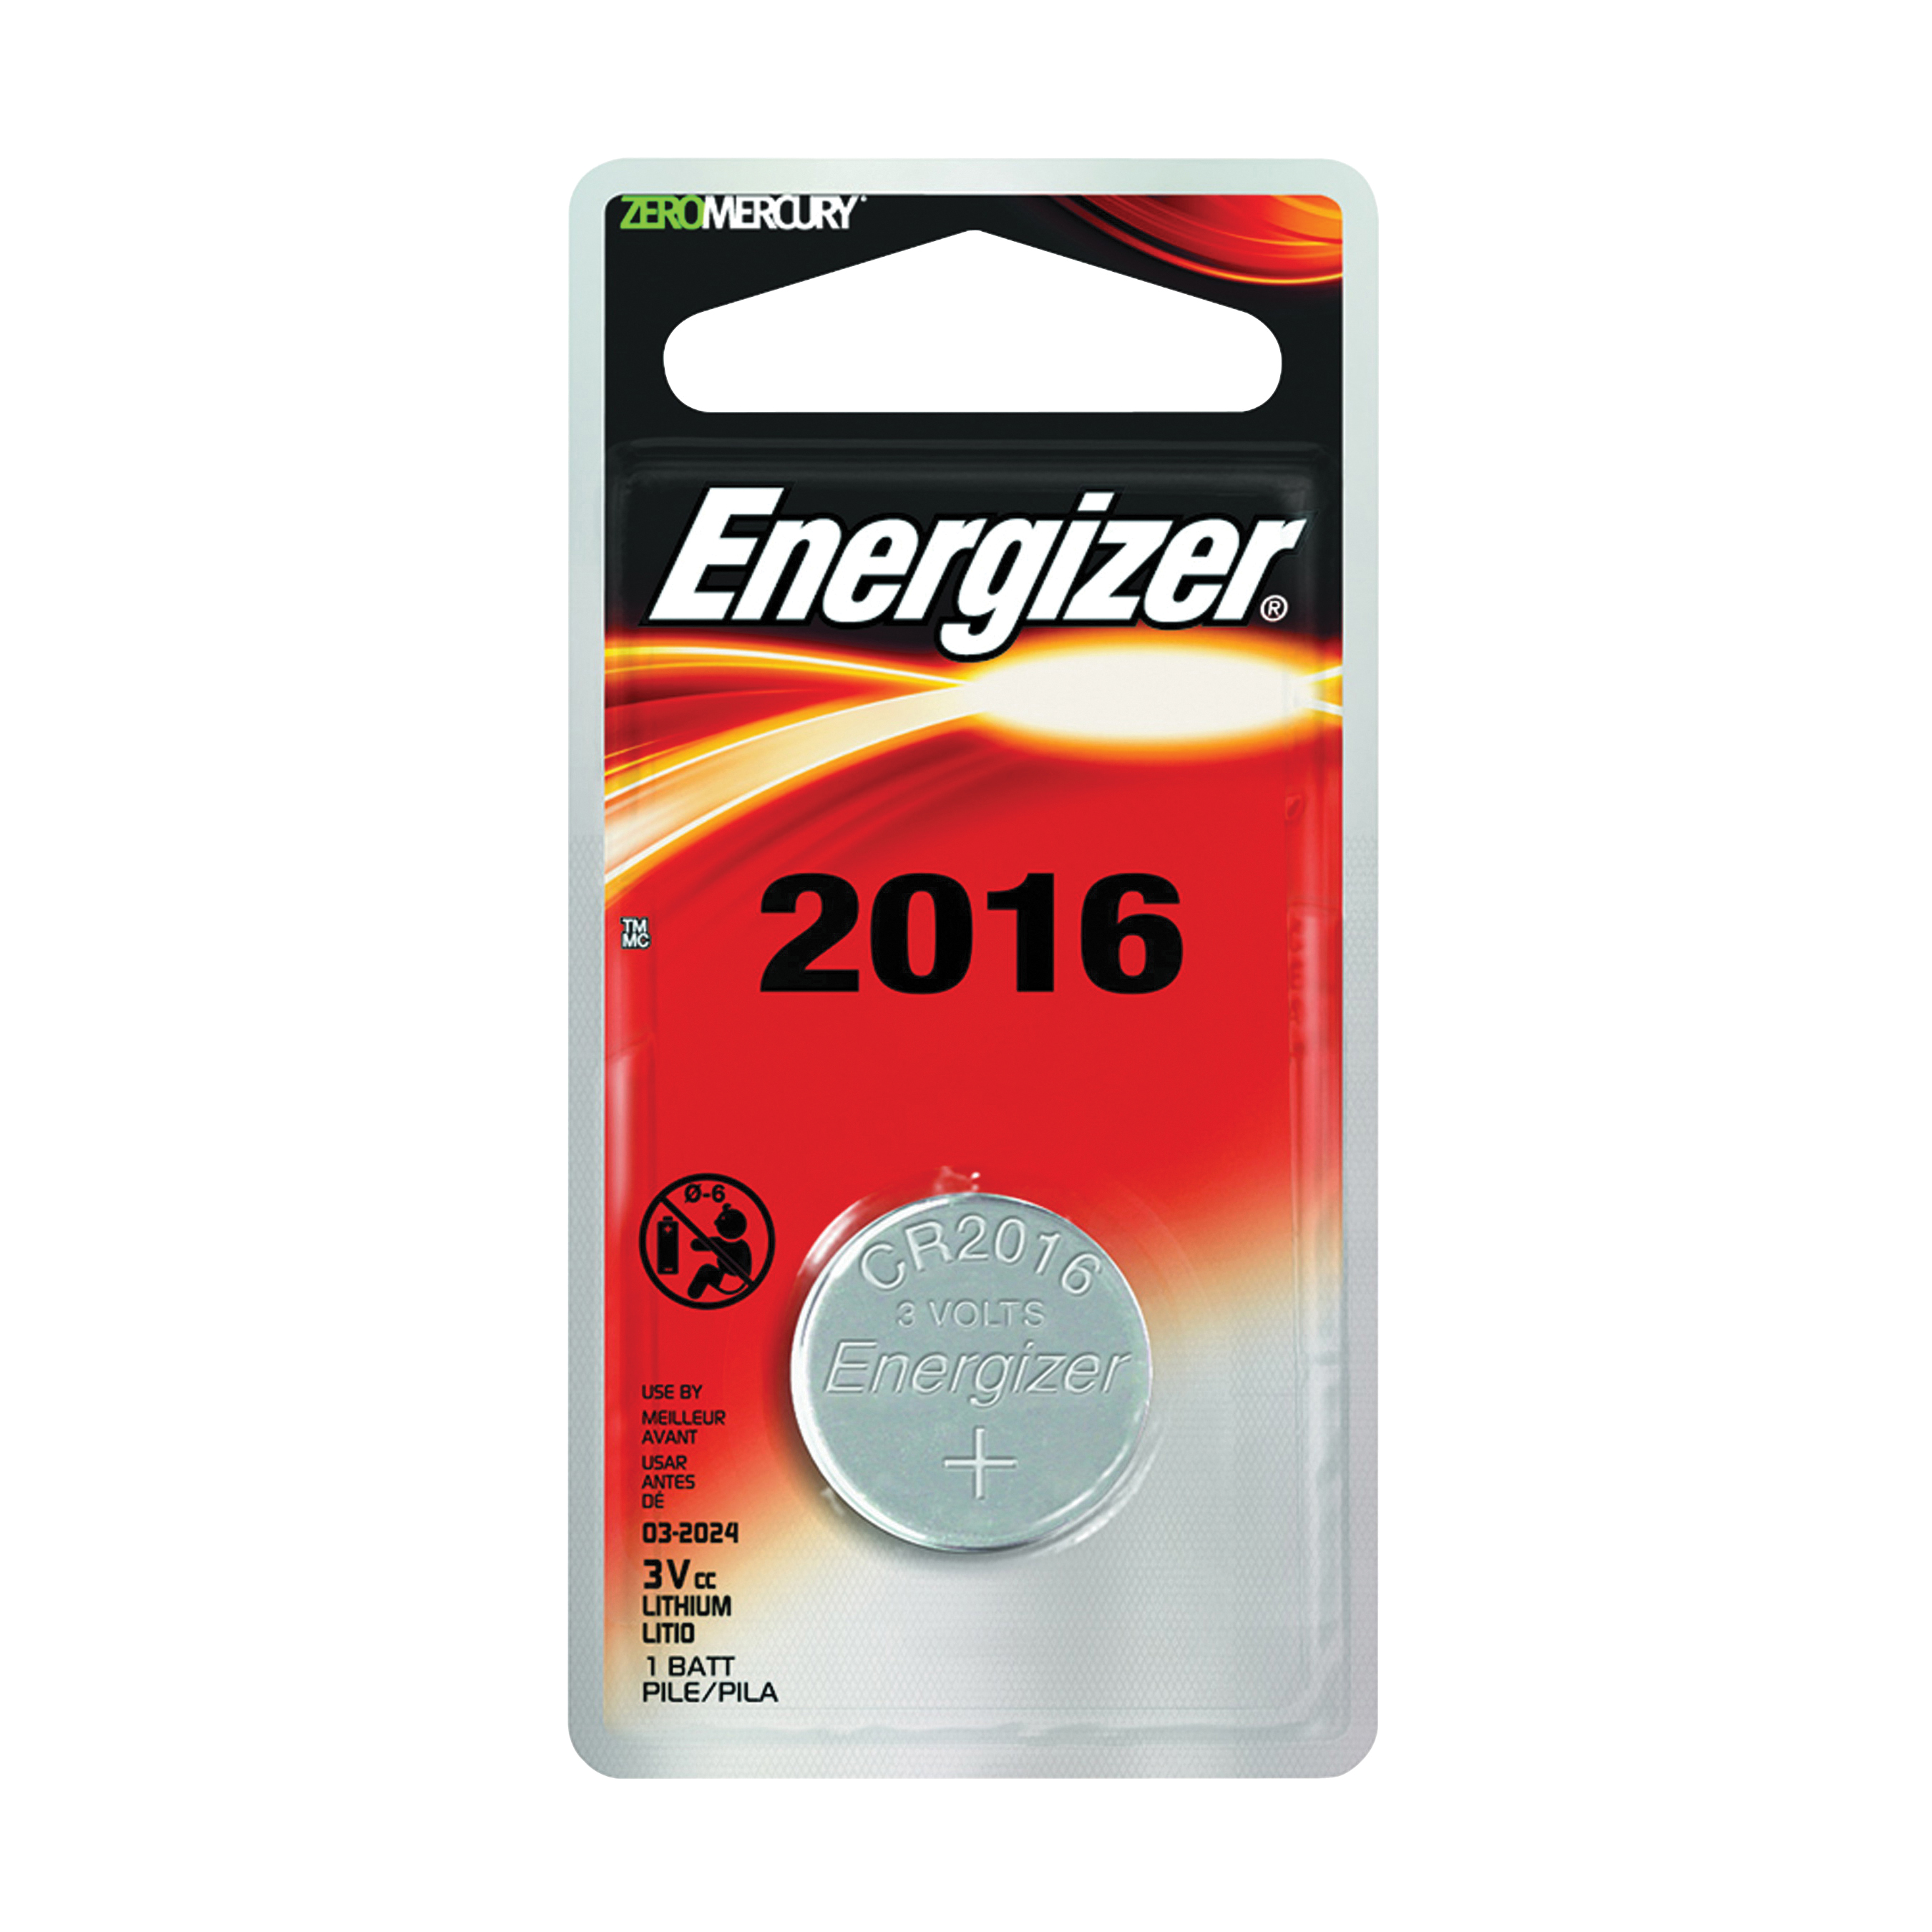 ECR2016BP Coin Cell Battery, 3 V Battery, 100 mAh, CR2016 Battery, Lithium, Manganese Dioxide